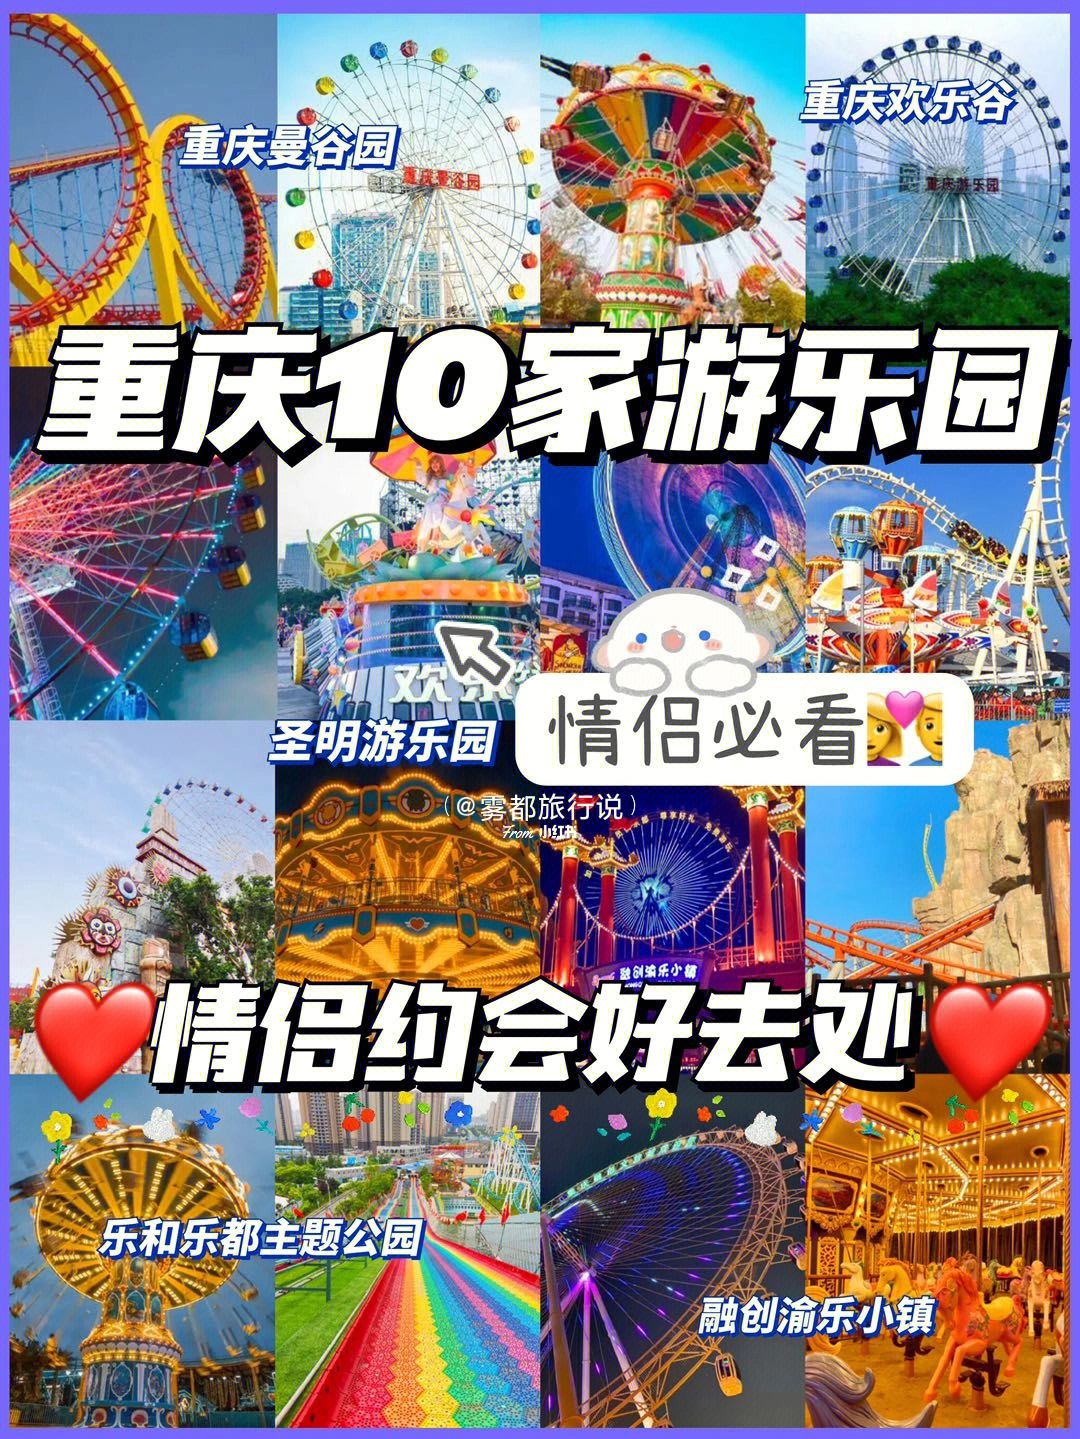 重庆欢乐谷门票多少钱图片